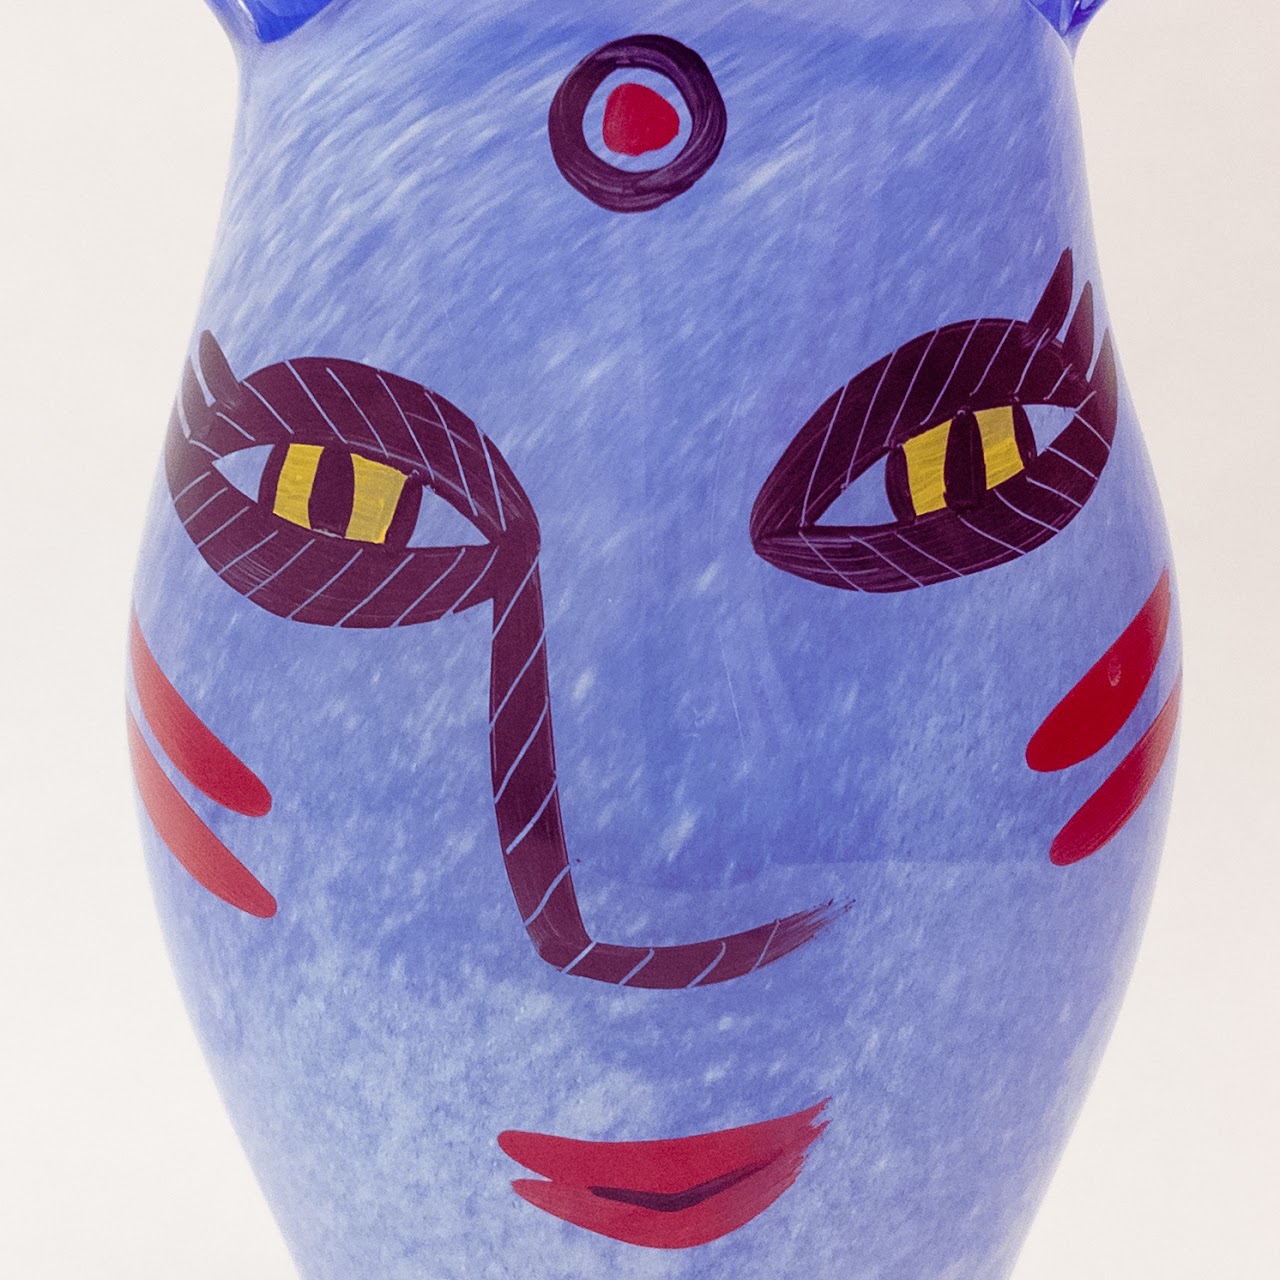 Kosta Boda Ulrica Hydman Vallien Blue Cat Vase